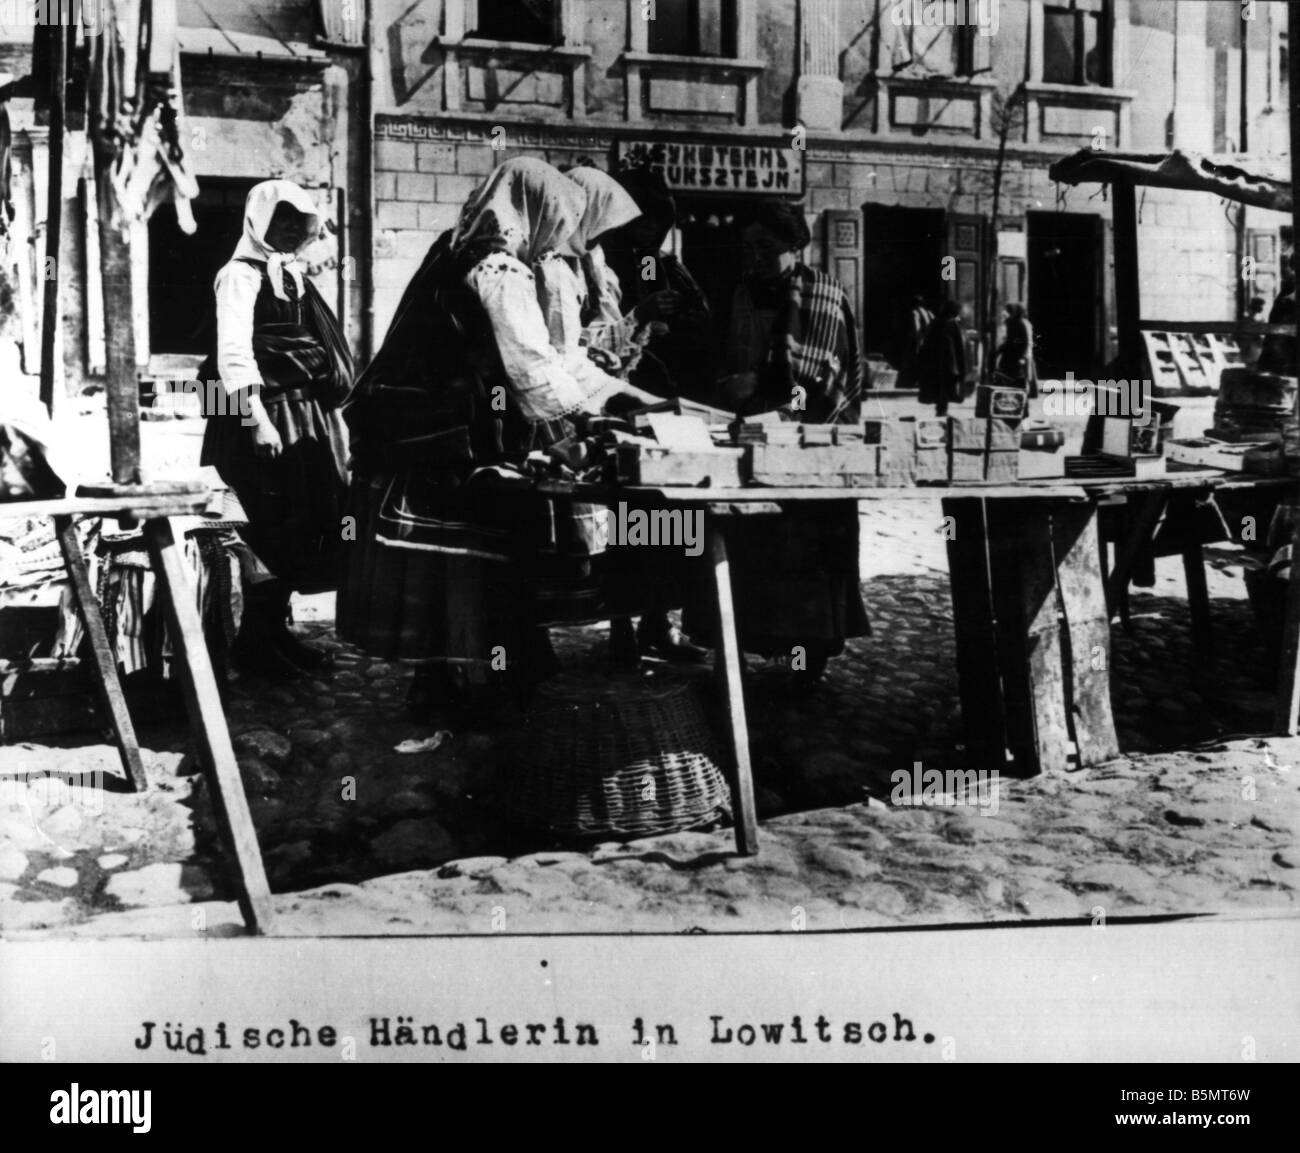 9Es 1915 0 0 A1 27 judíos Lowitsch vendedora en 1915 Historia del Judaísmo judíos orientales vendedora en judía Lowitsch Lowicz west Foto de stock